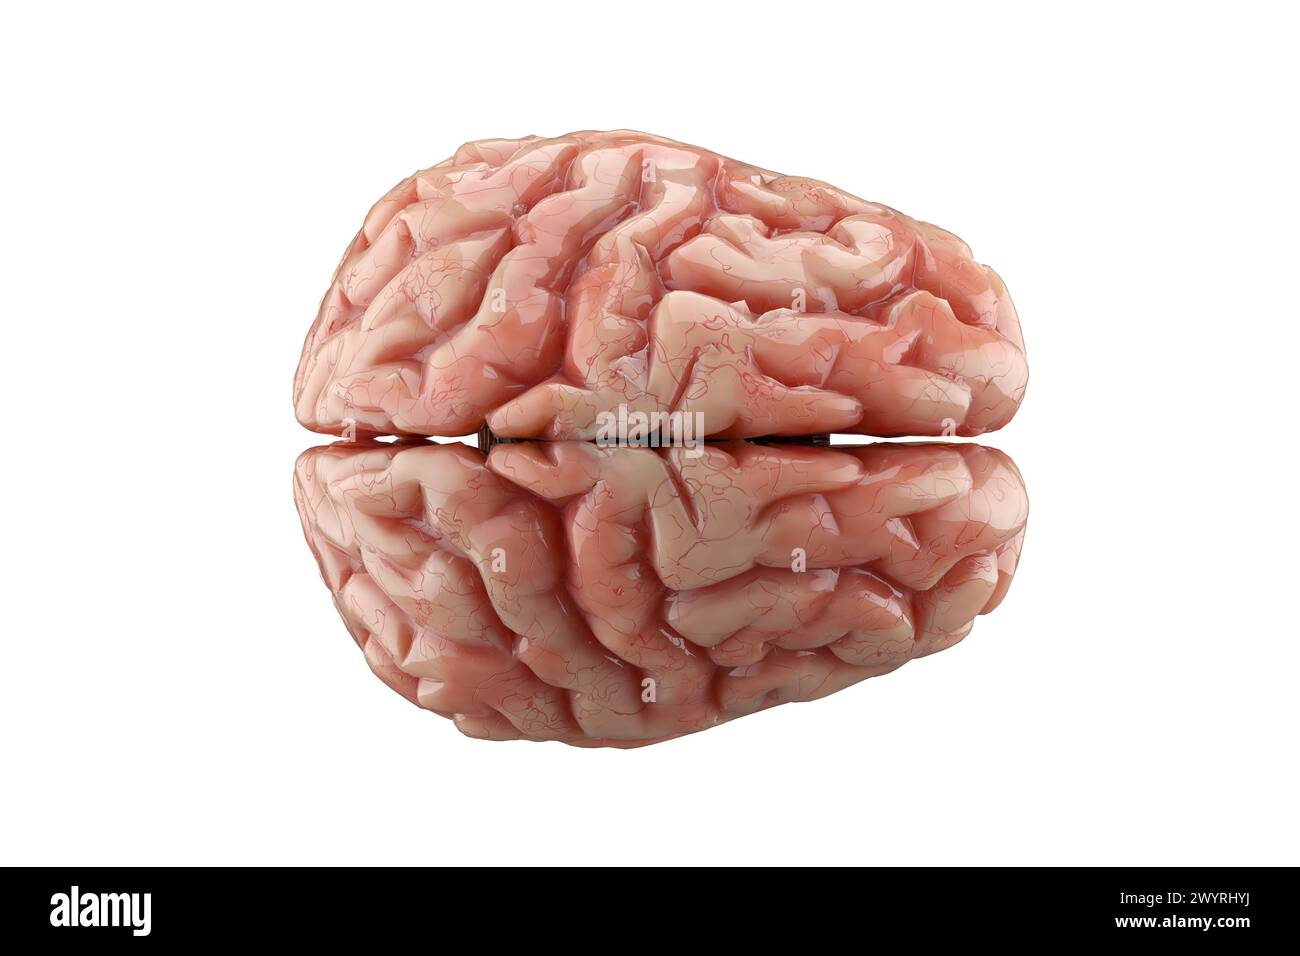 Menschliches Gehirn isoliert auf weißem Hintergrund. Denken, psychische Gesundheit, Neurologie und künstliche Intelligenz. 3D-Rendering. Stockfoto